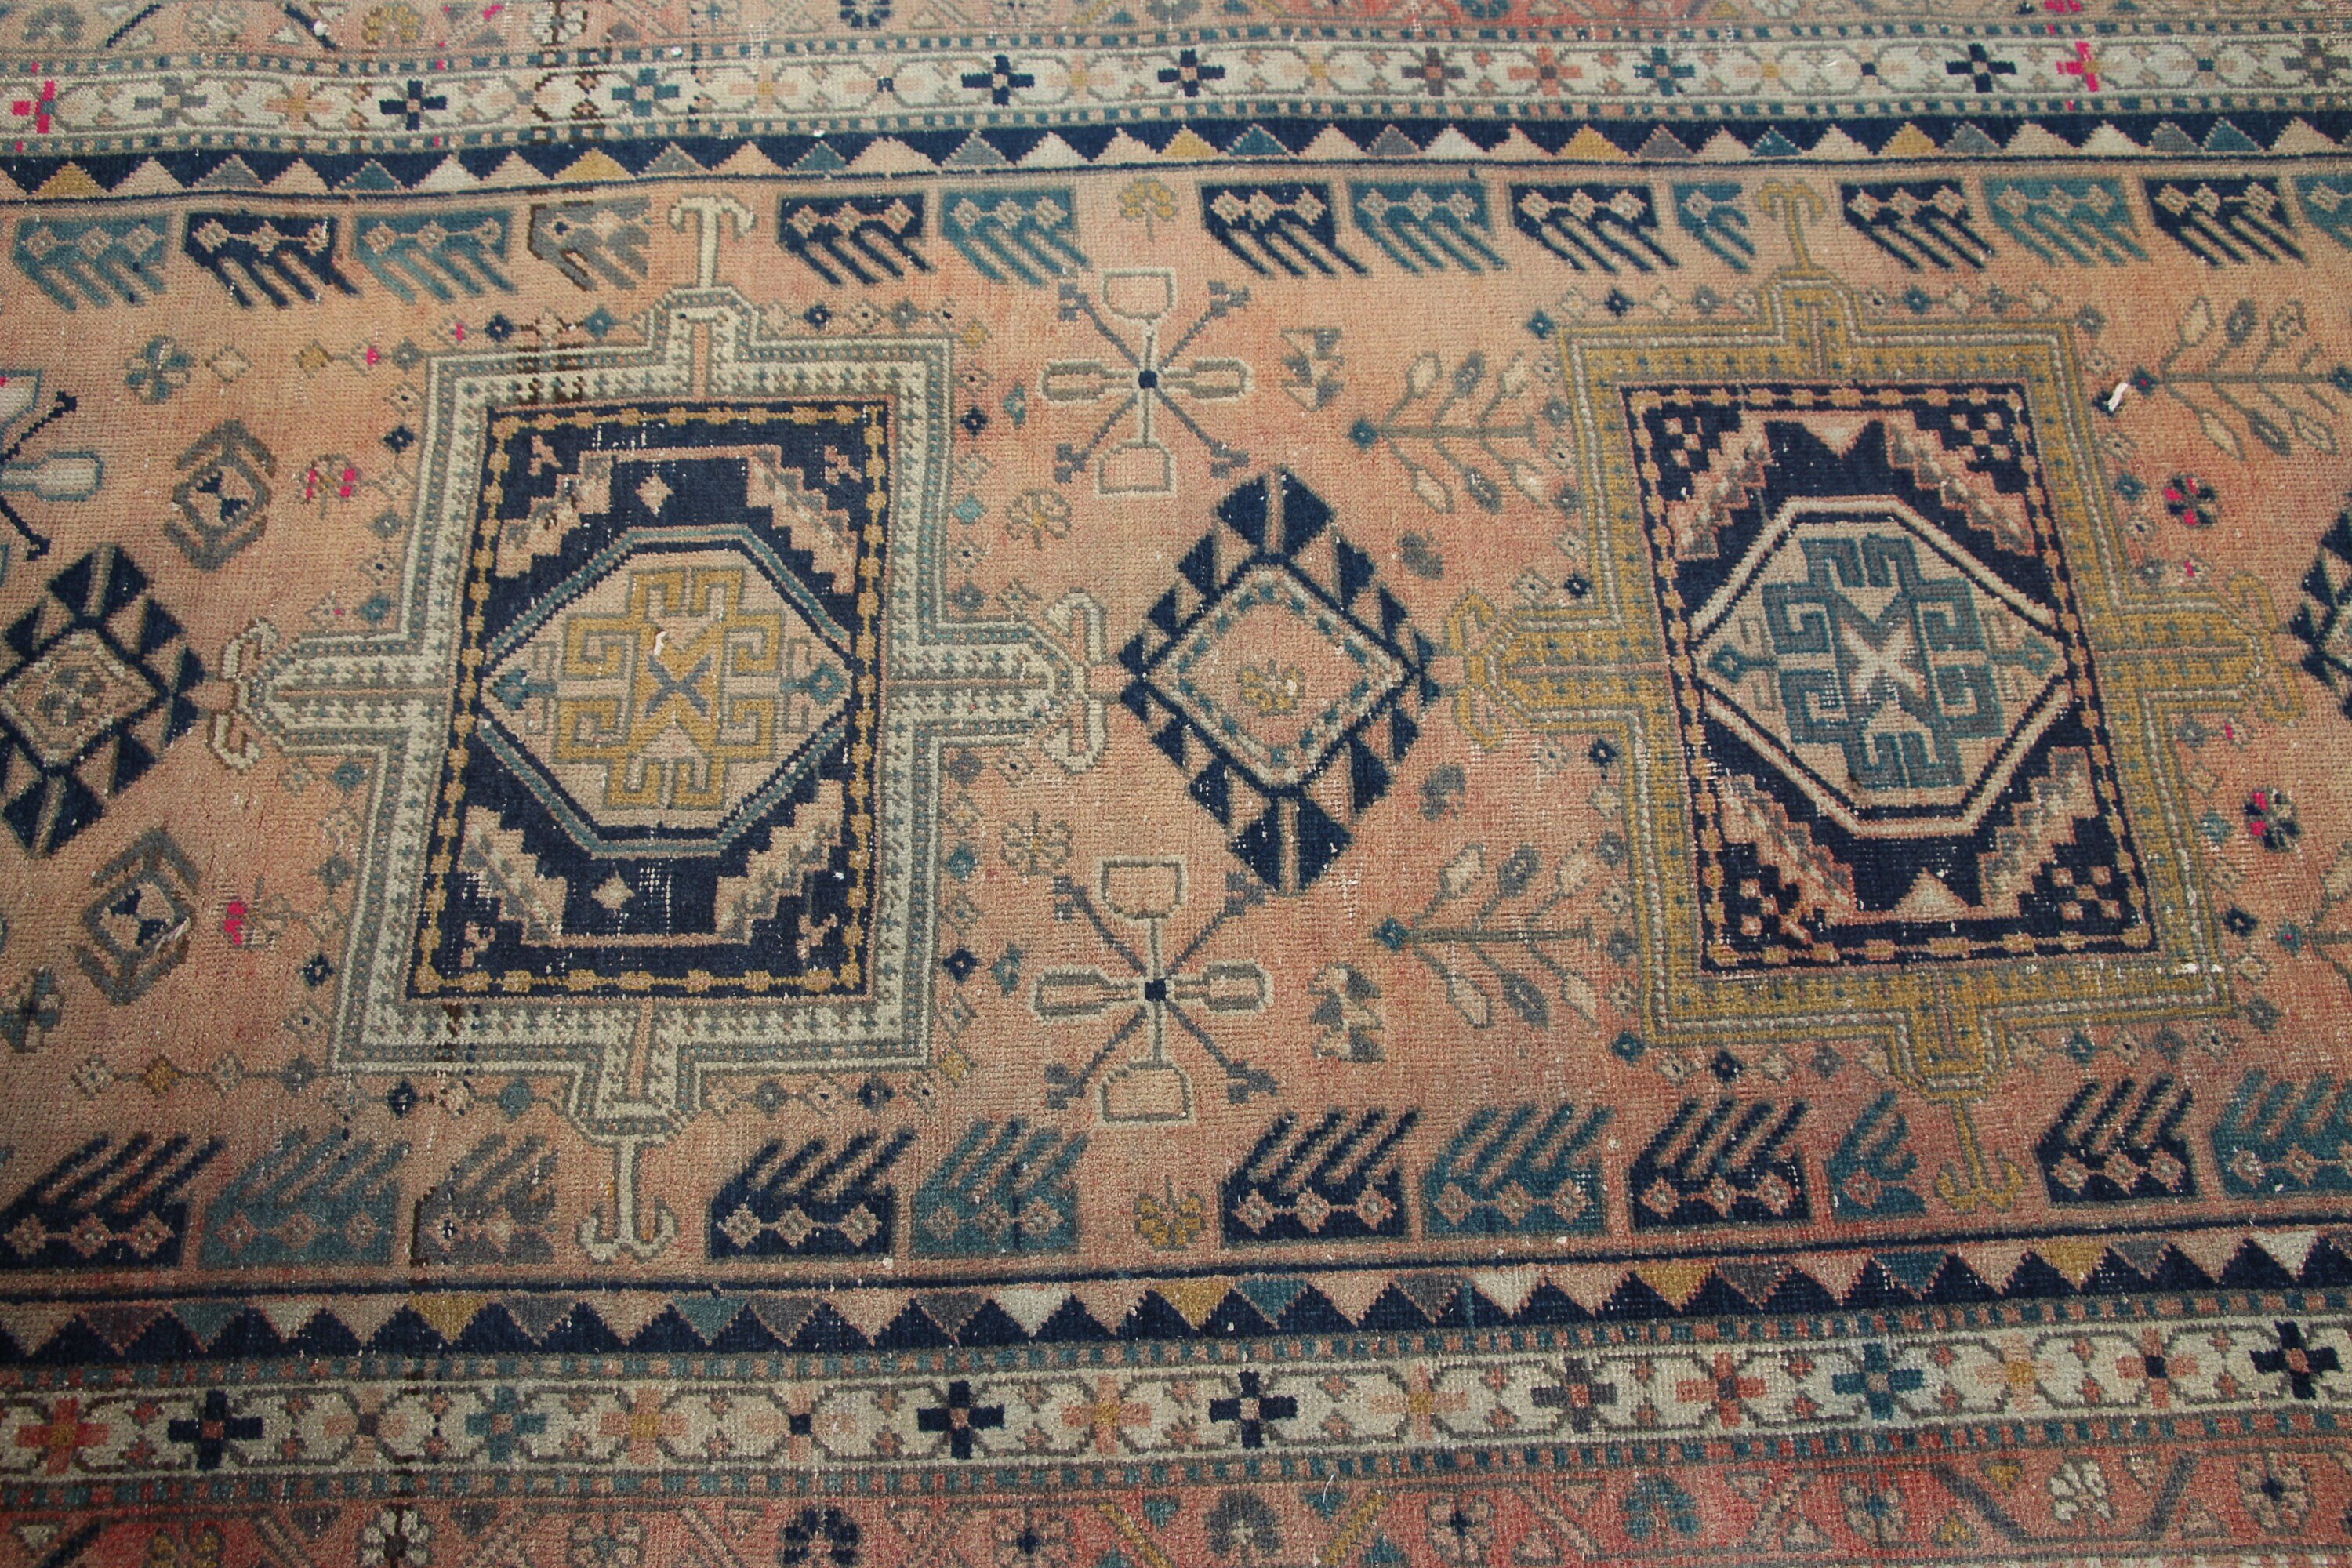 Turkish Rug, Vintage Rugs, Floor Rugs, Aztec Rugs, Orange Bedroom Rug, Antique Rug, Hallway Rugs, 3.2x10.5 ft Runner Rug, Rugs for Hallway